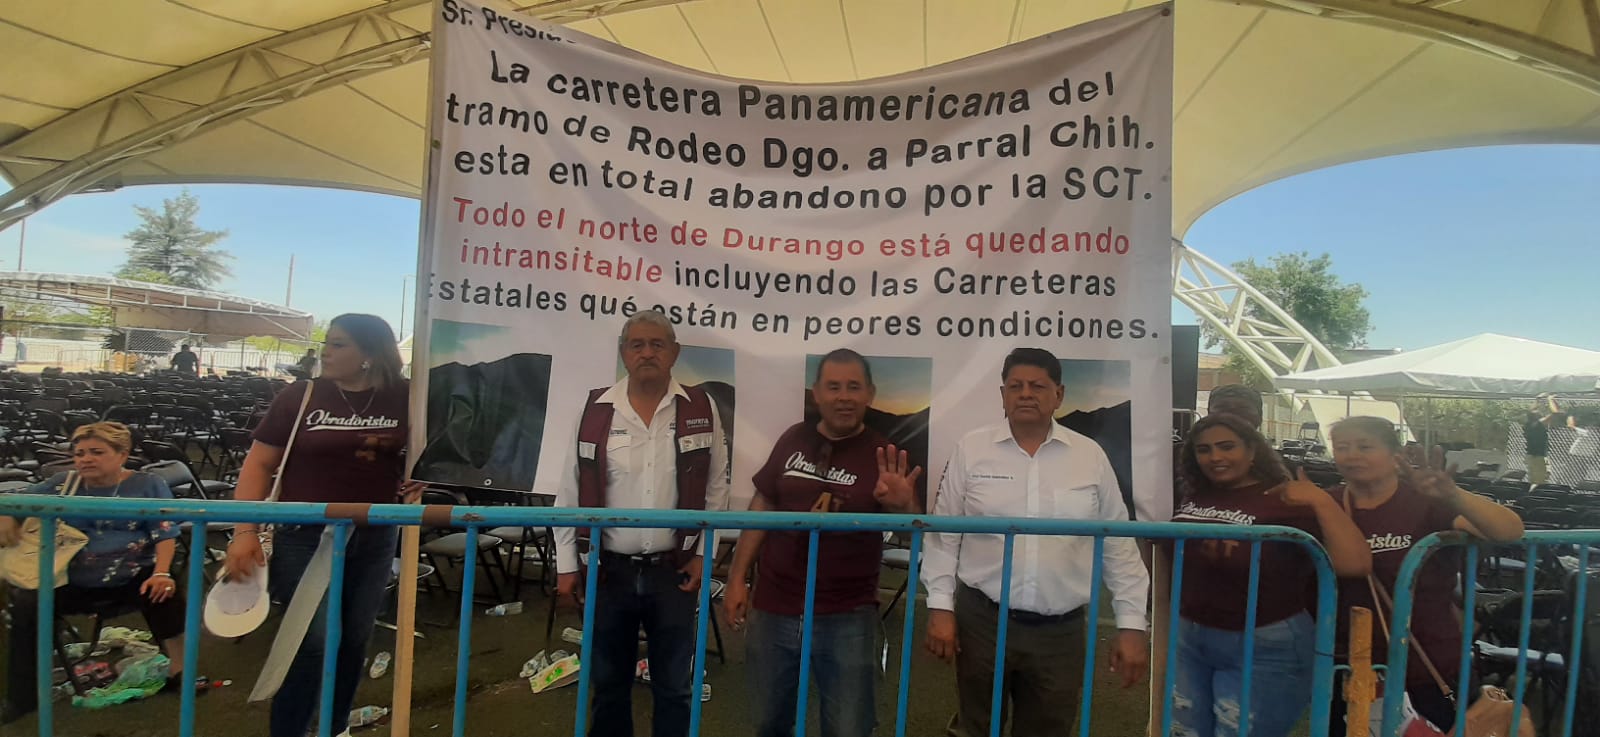 Morenistas en Durango piden a AMLO y a Villegas arreglar carreteras: 'están en pésimas condiciones'